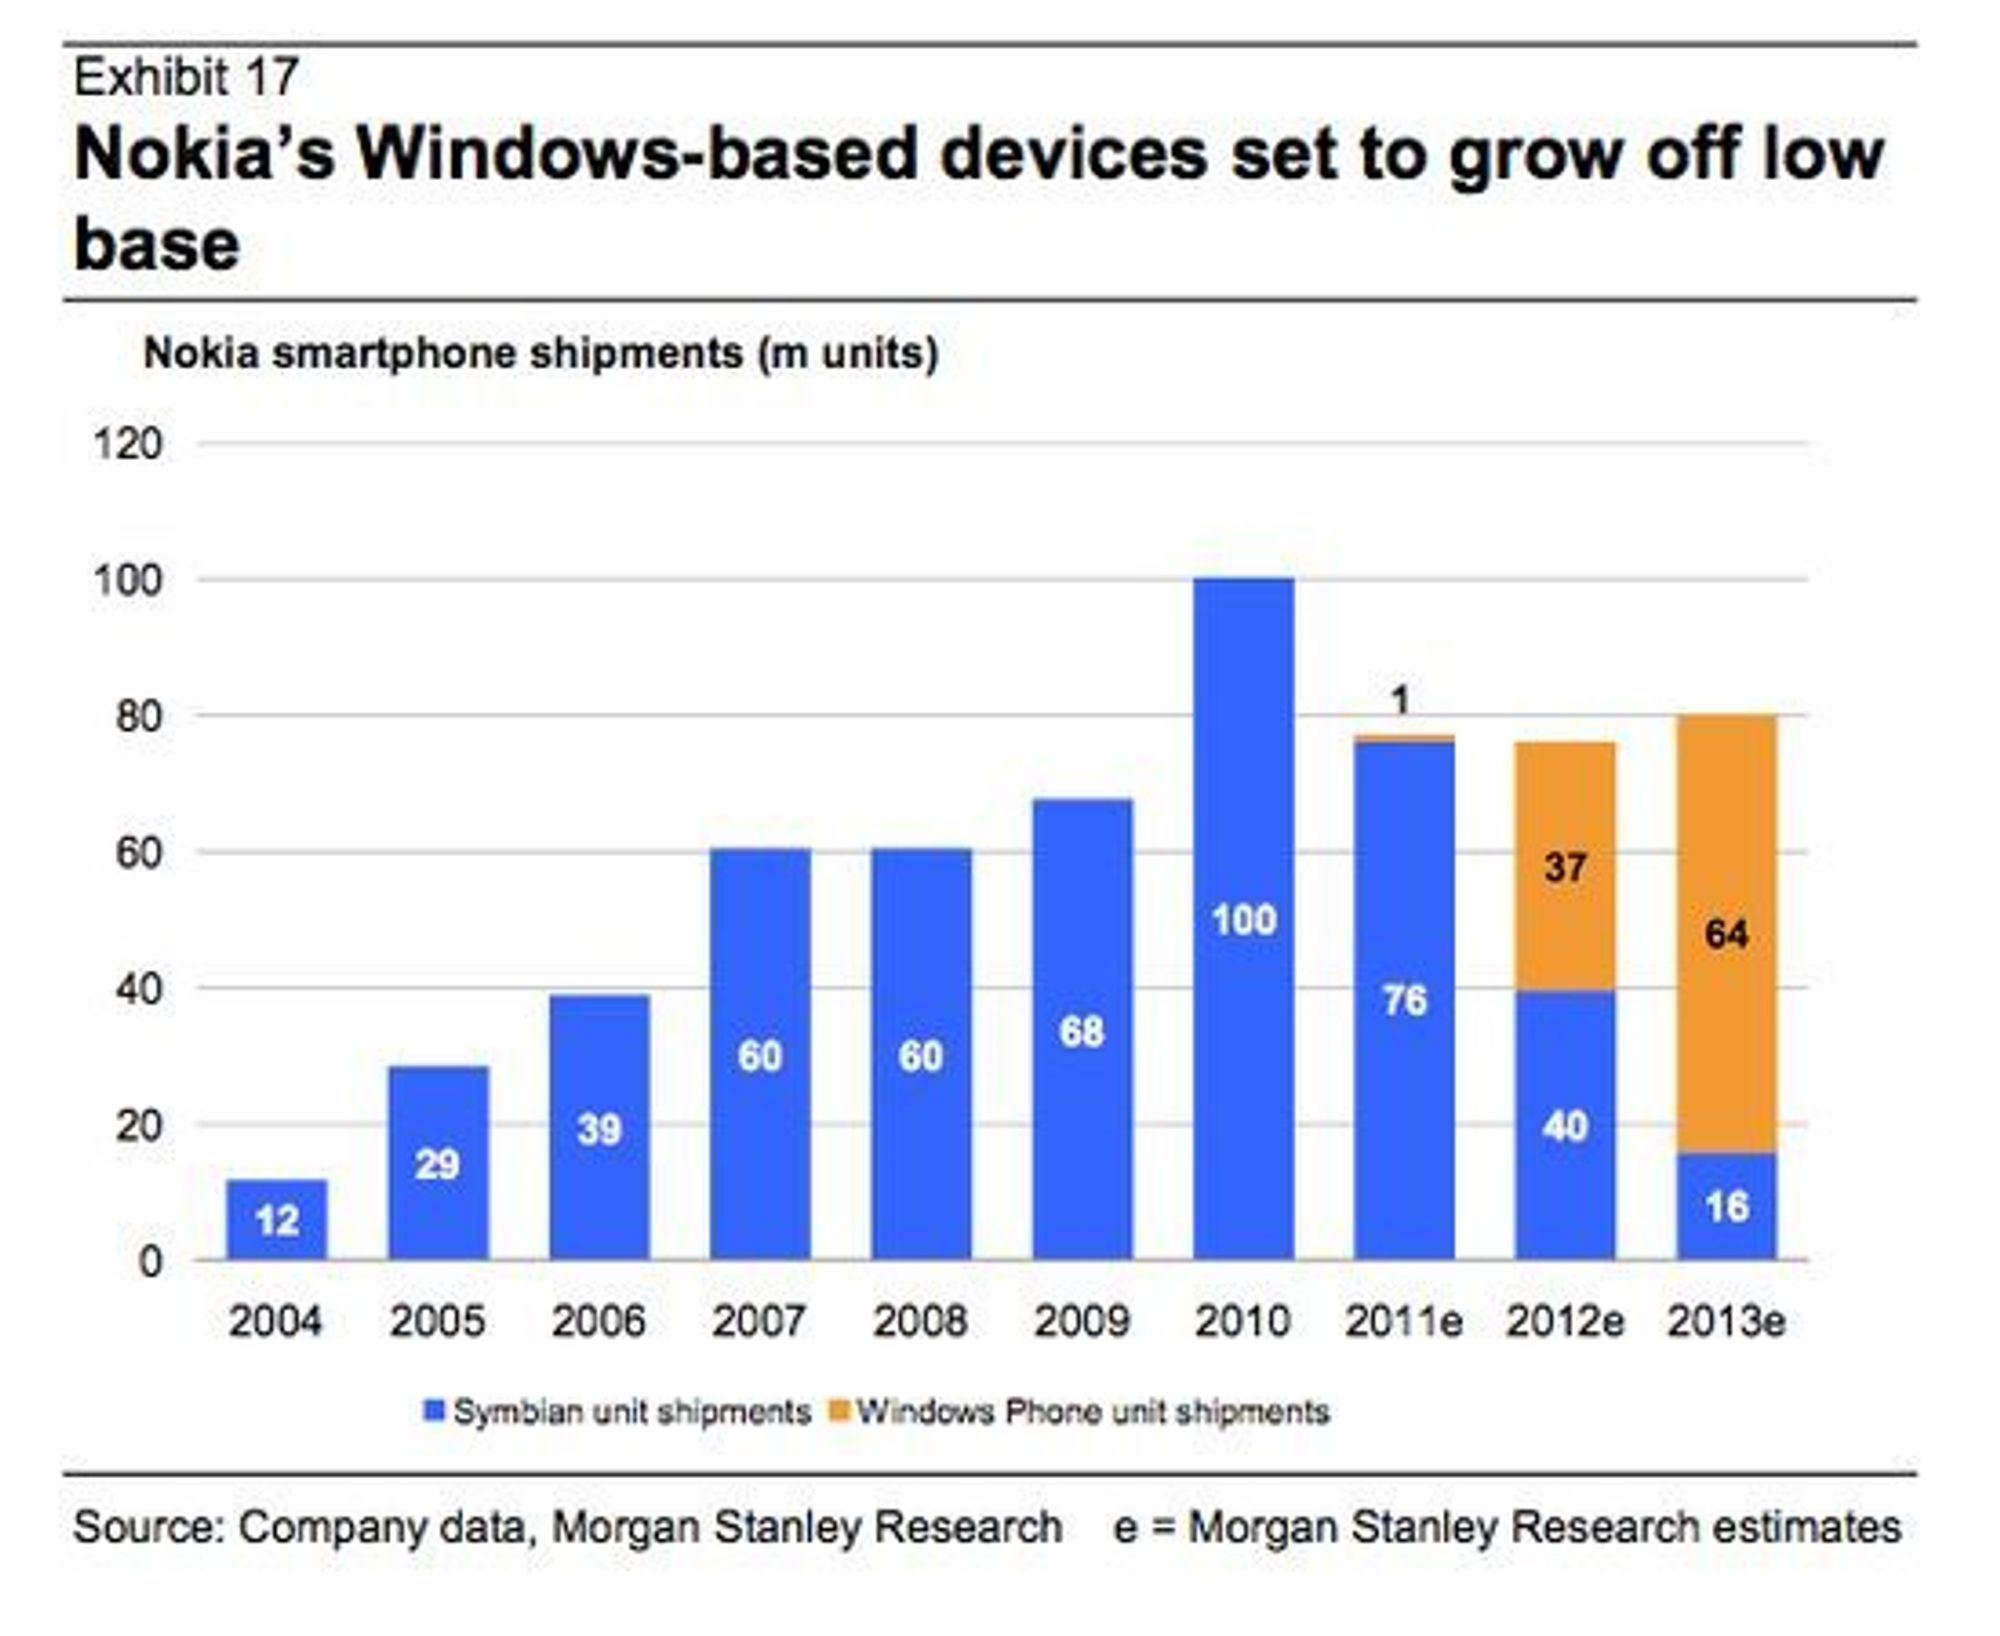 Nokias salg av smartmobiler mellom 2004 og 2013. De tre siste årene er estimater.